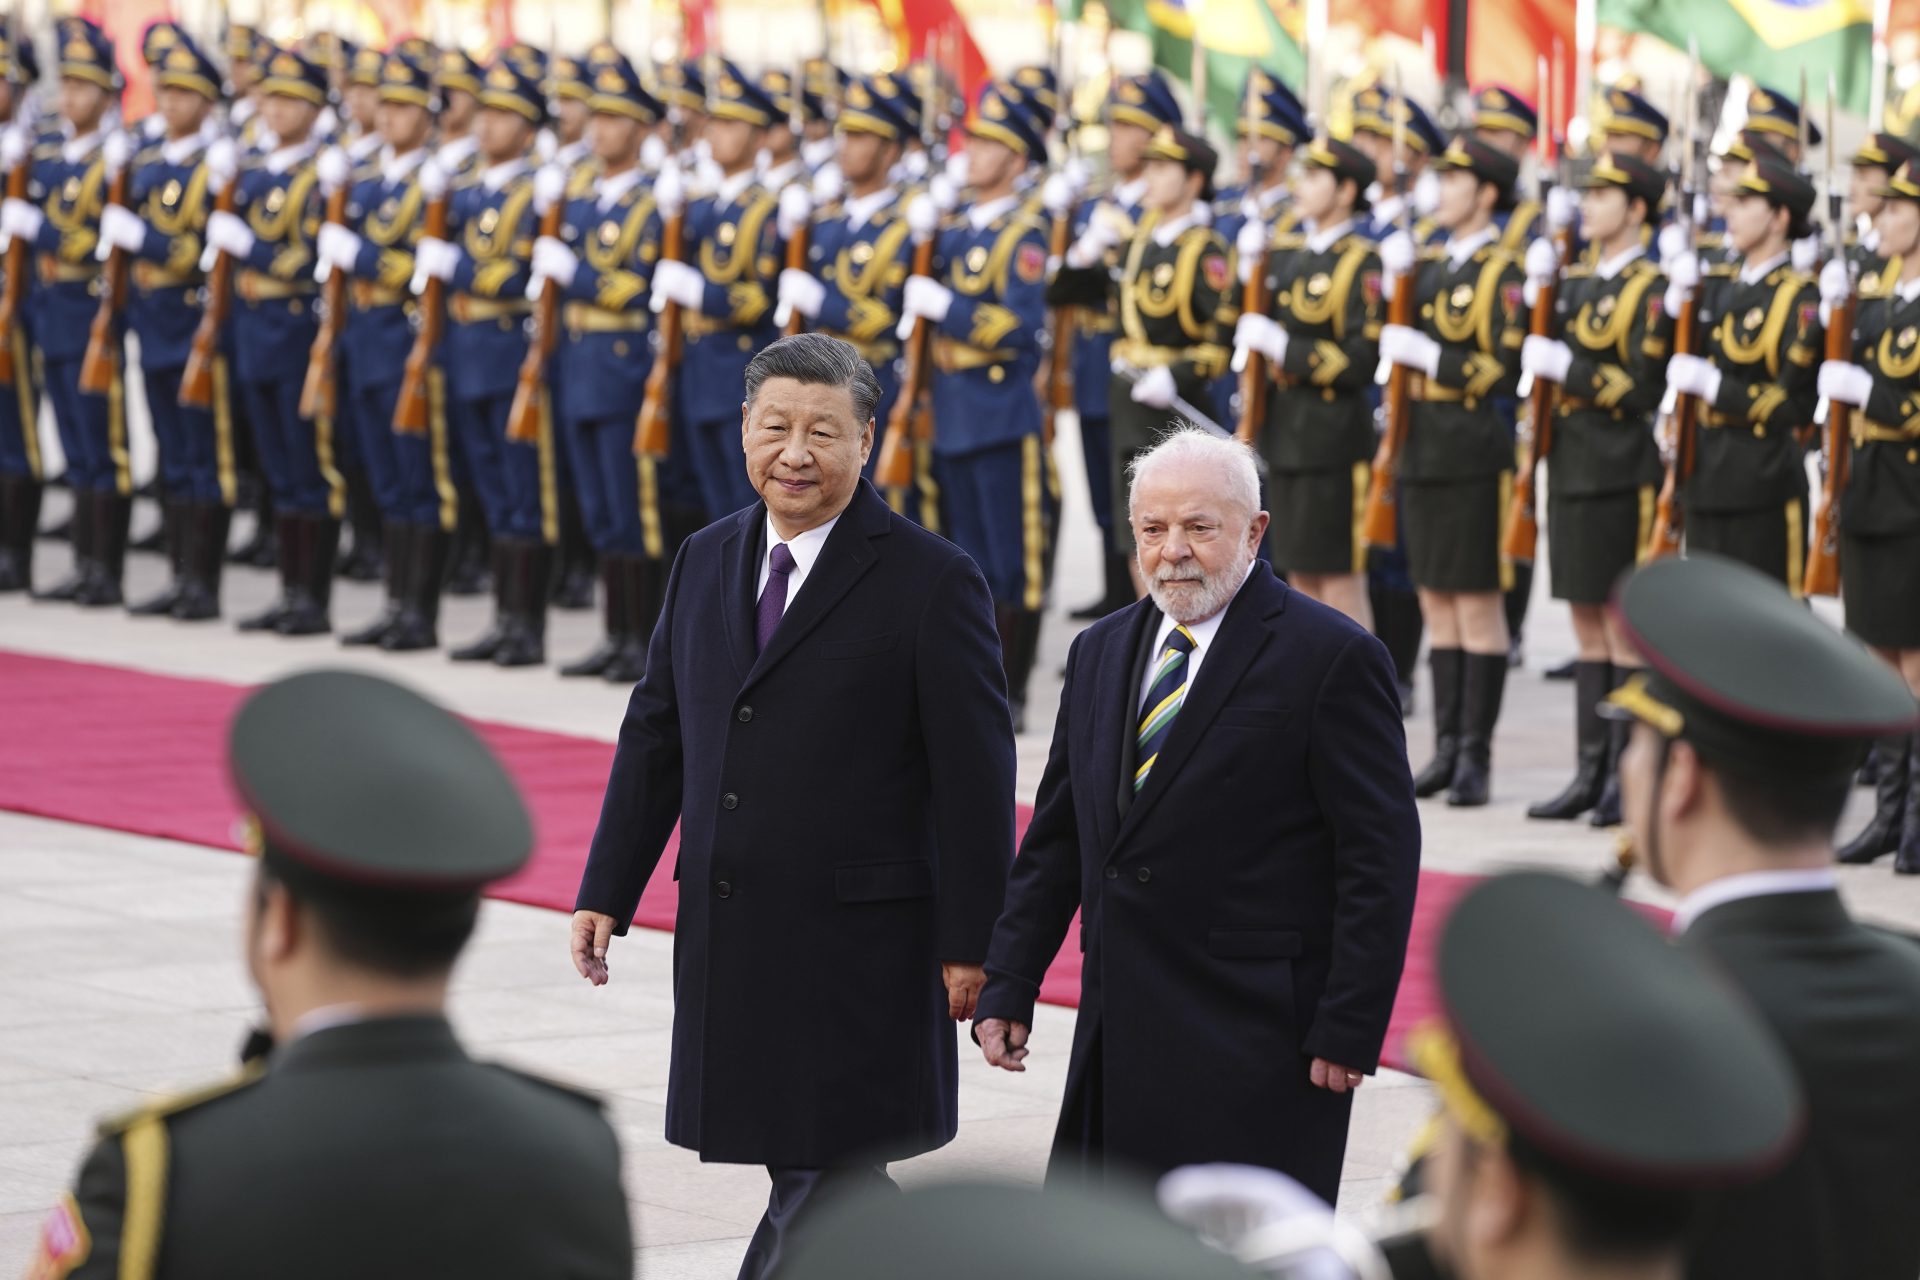 O presidente chinês Xi Jinping e o presidente brasileiro Luiz Inácio Lula da Silva se cumprimentam após a cerimônia de assinatura no Grande Salão do Povo, em Pequim, na China, nesta sexta-feira (14) - Foto: Ken Ishi/ Associated Press/ Estadão Conteúdo